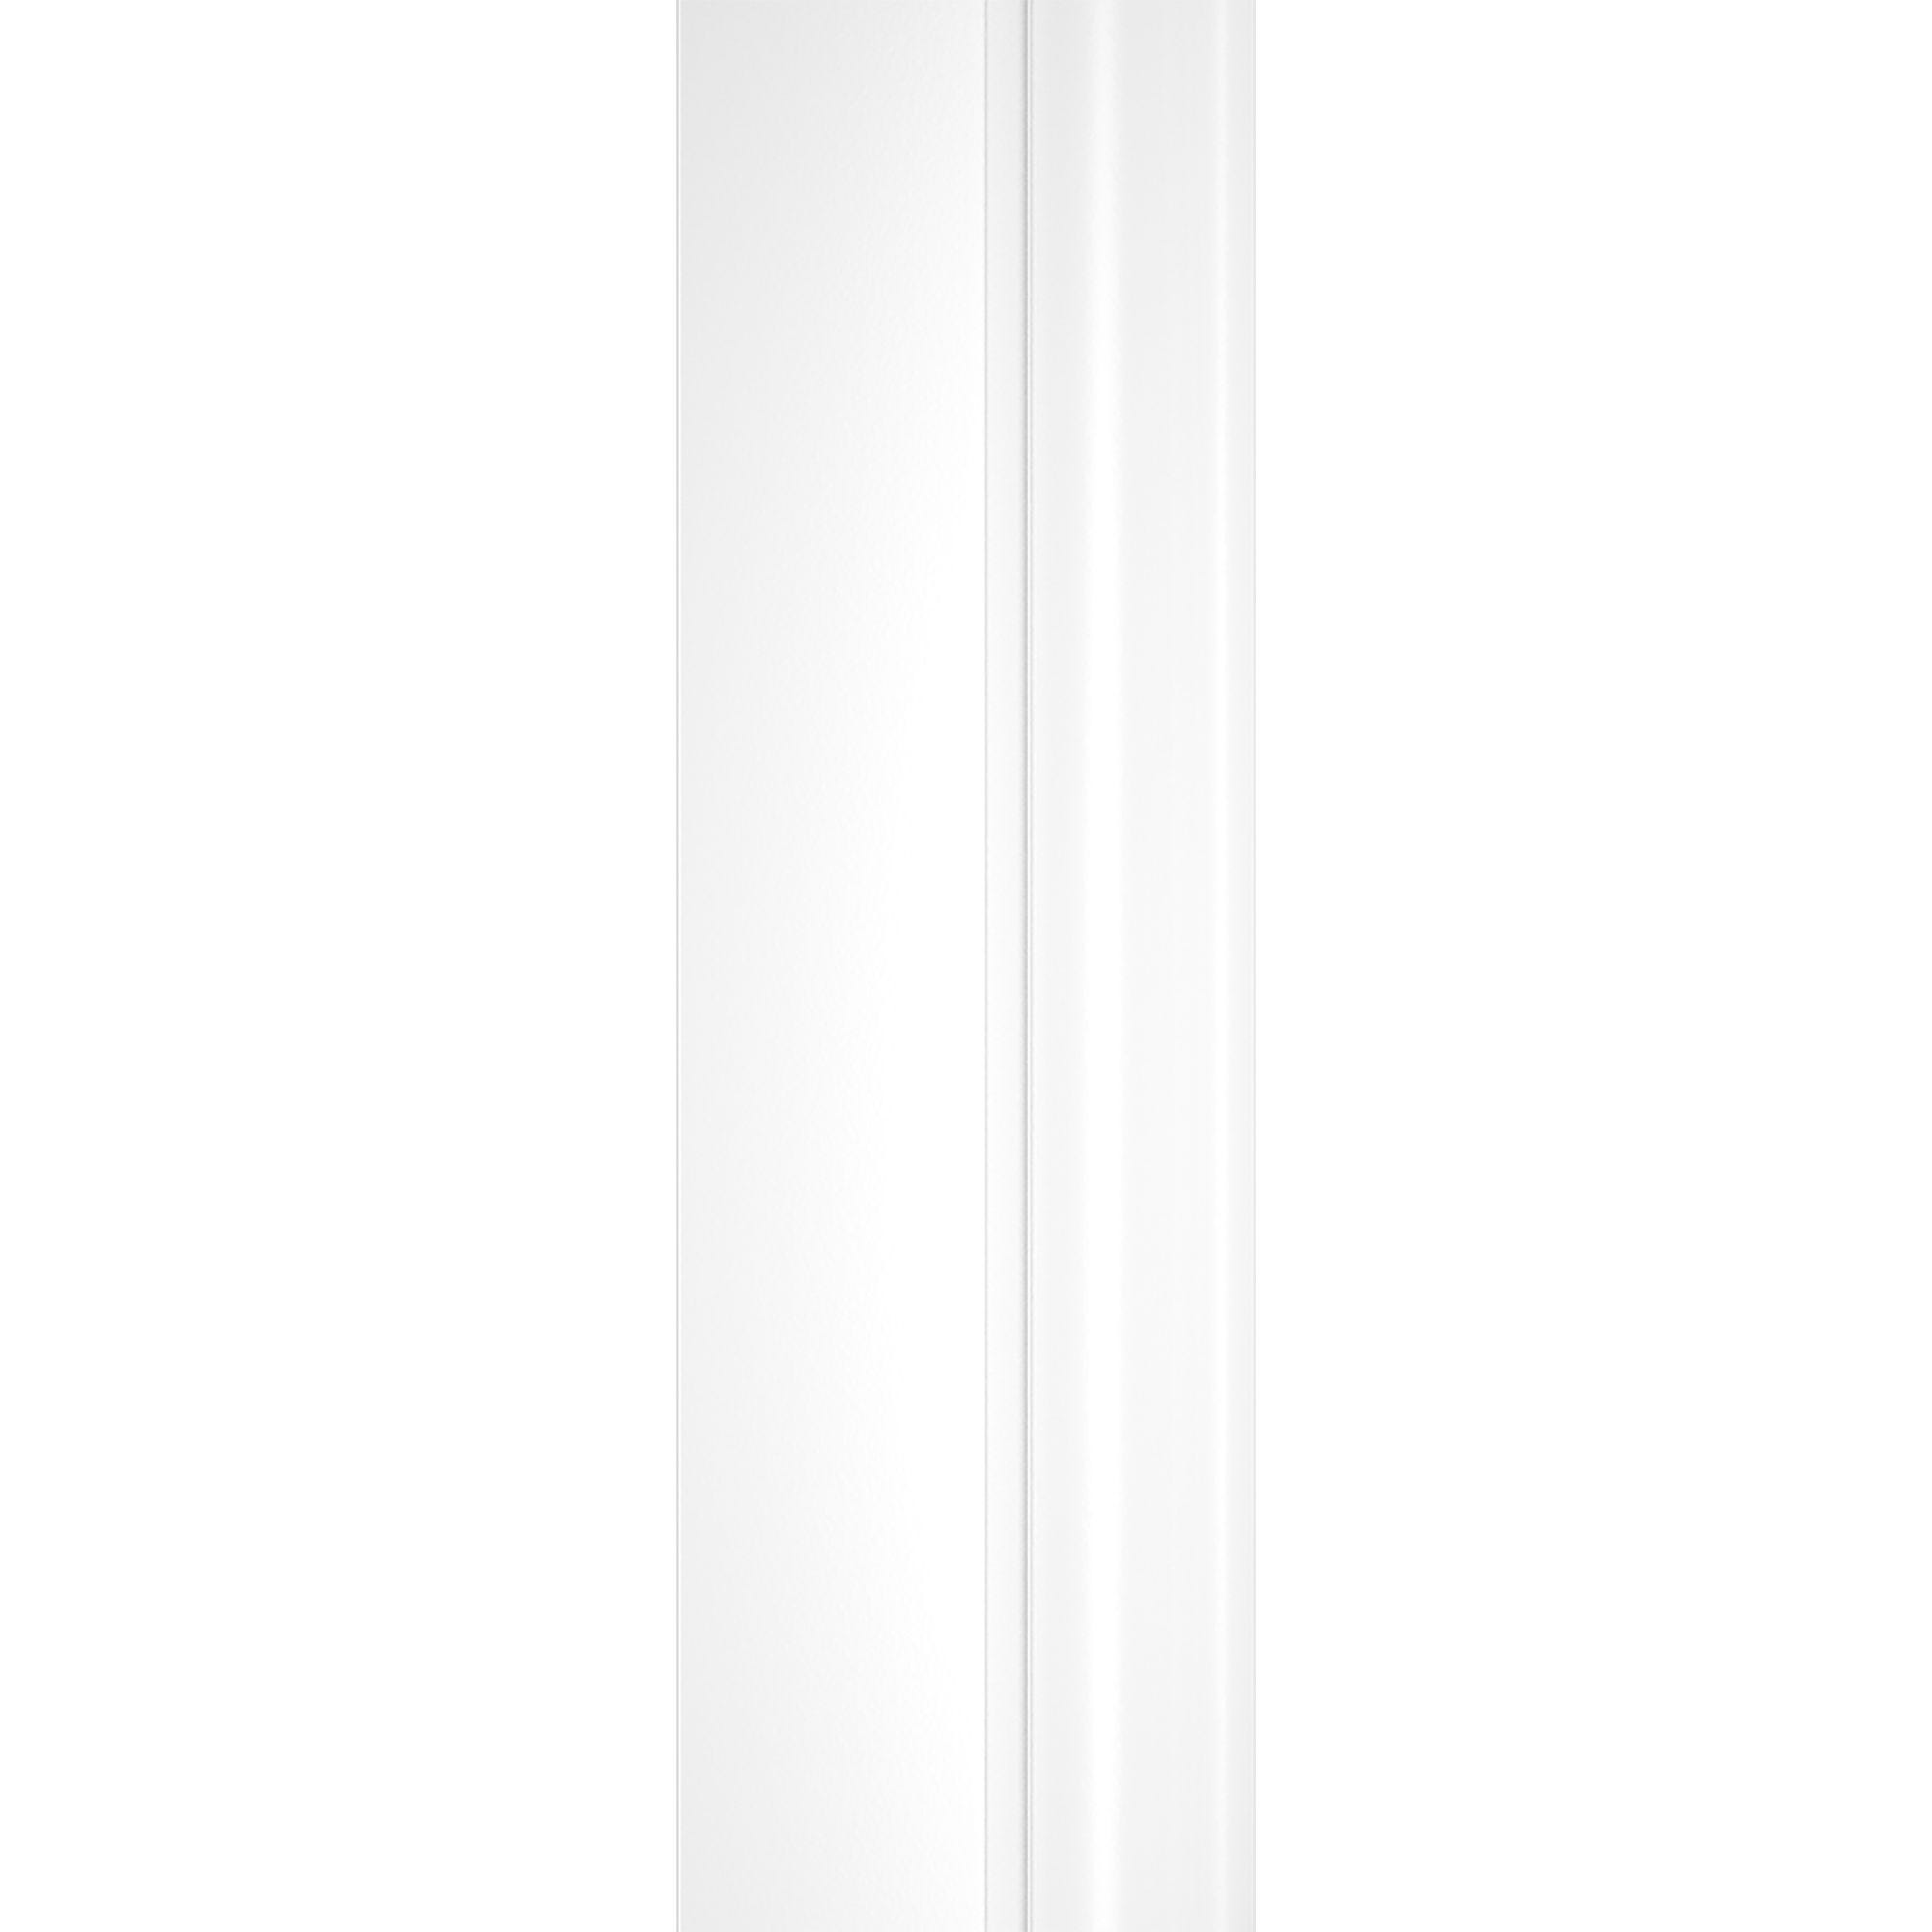 Schulte paroi de douche acces d'angle droit avec portes de douche coulissantes, 80 x 80 x 190 cm, 5 mm, verre sablé au milieu, profilé blanc, Sunny 3